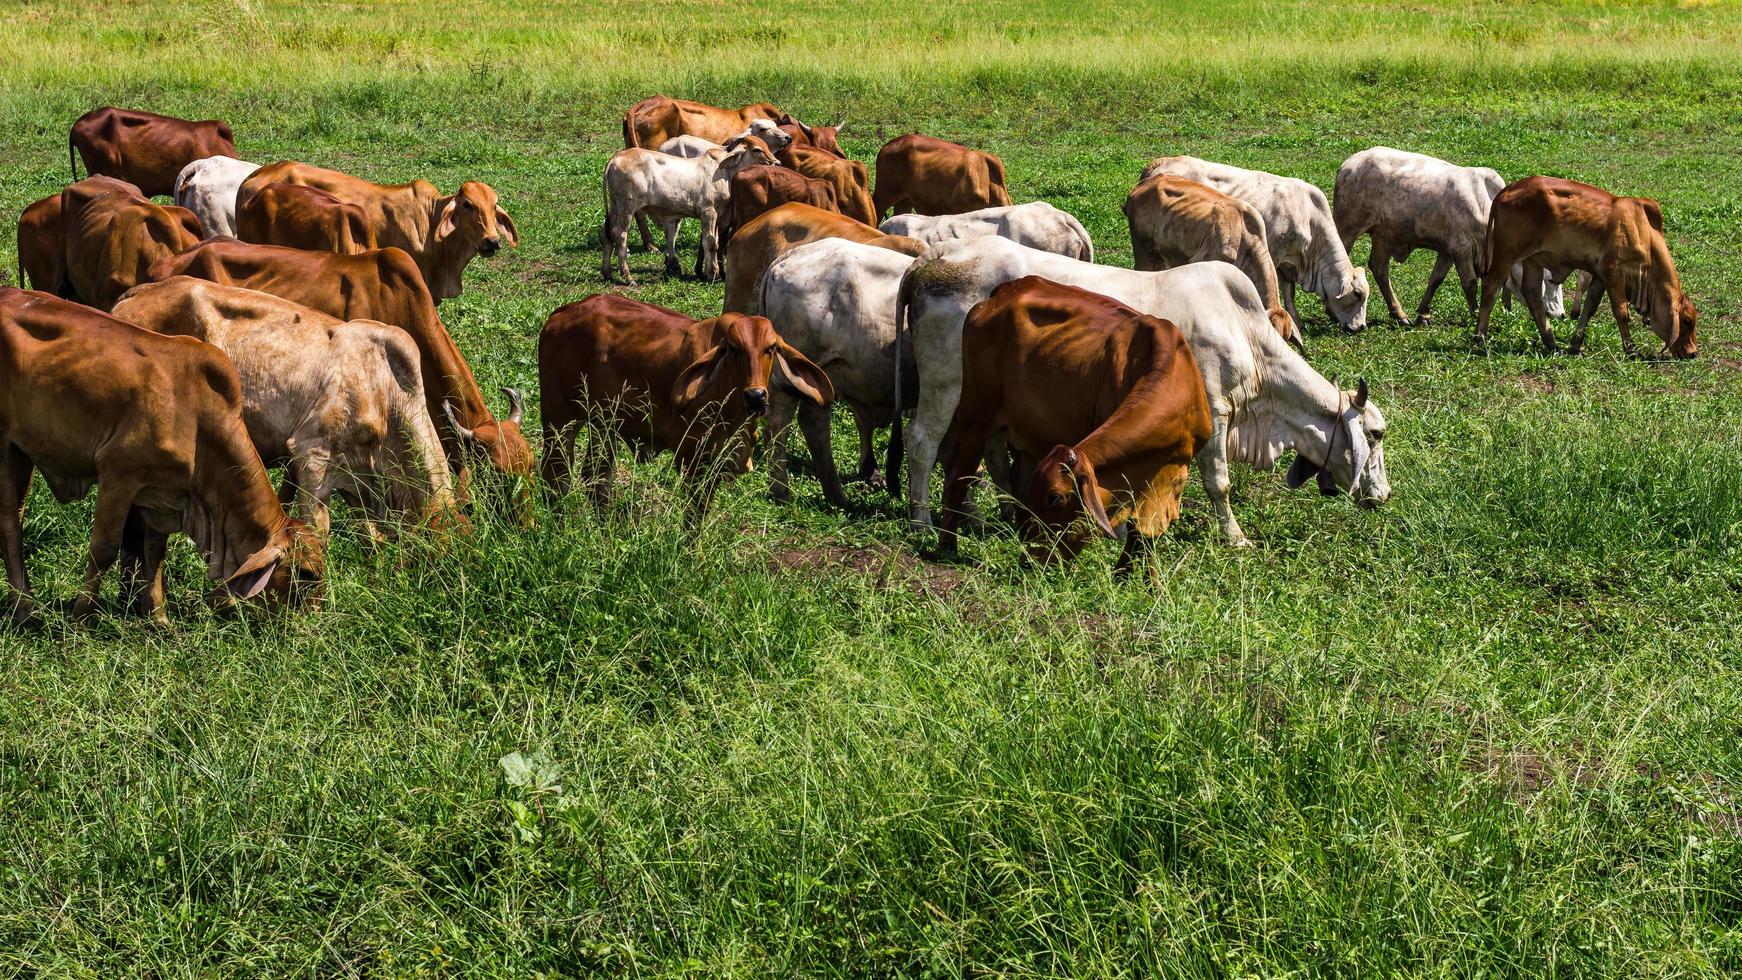 rebanhos de gado de gado pastando foto